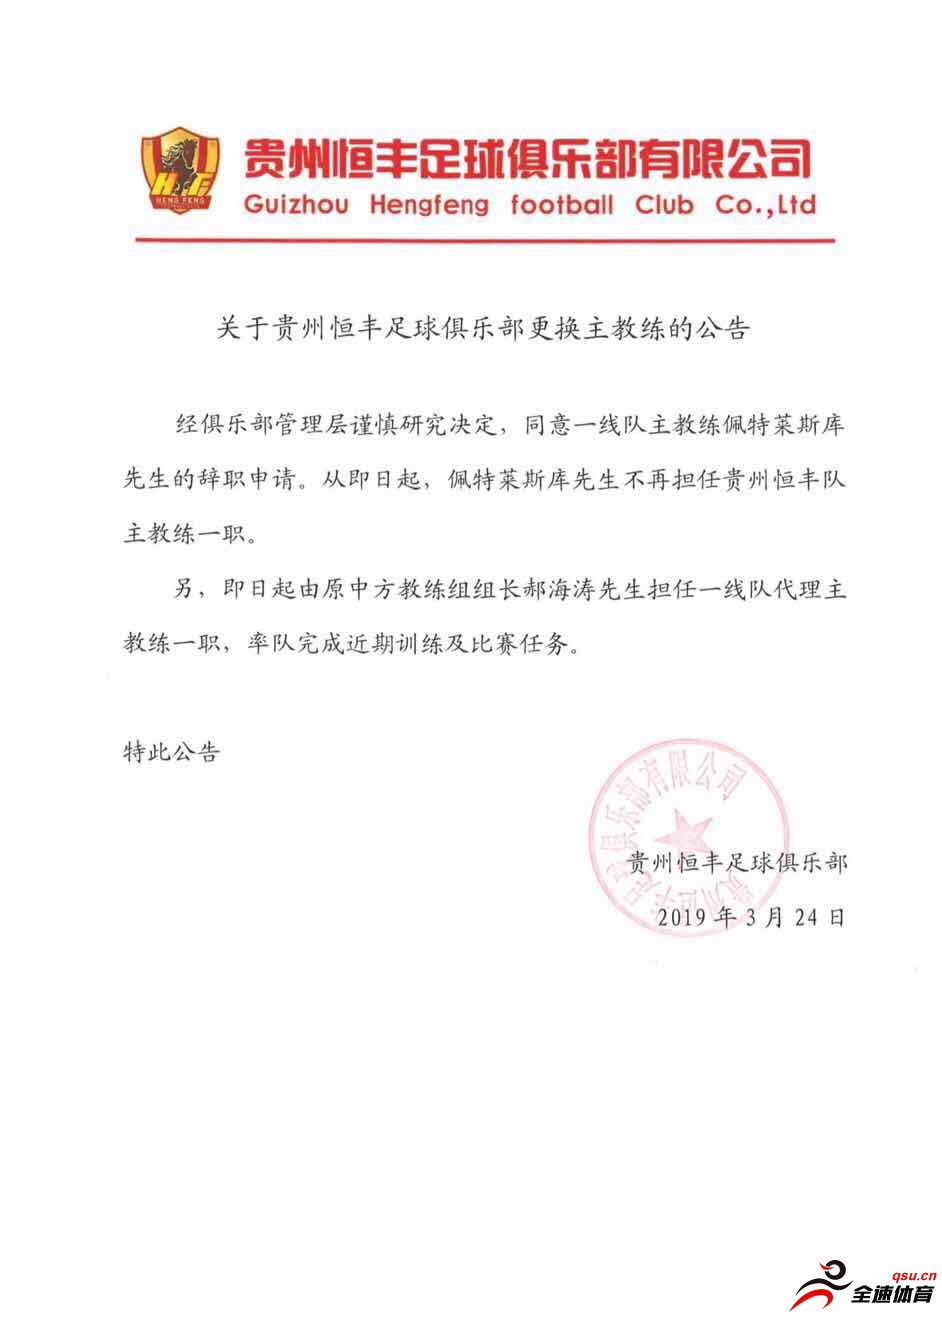 贵州恒丰俱乐部官方宣布，同意主教练佩特莱斯库的辞职申请